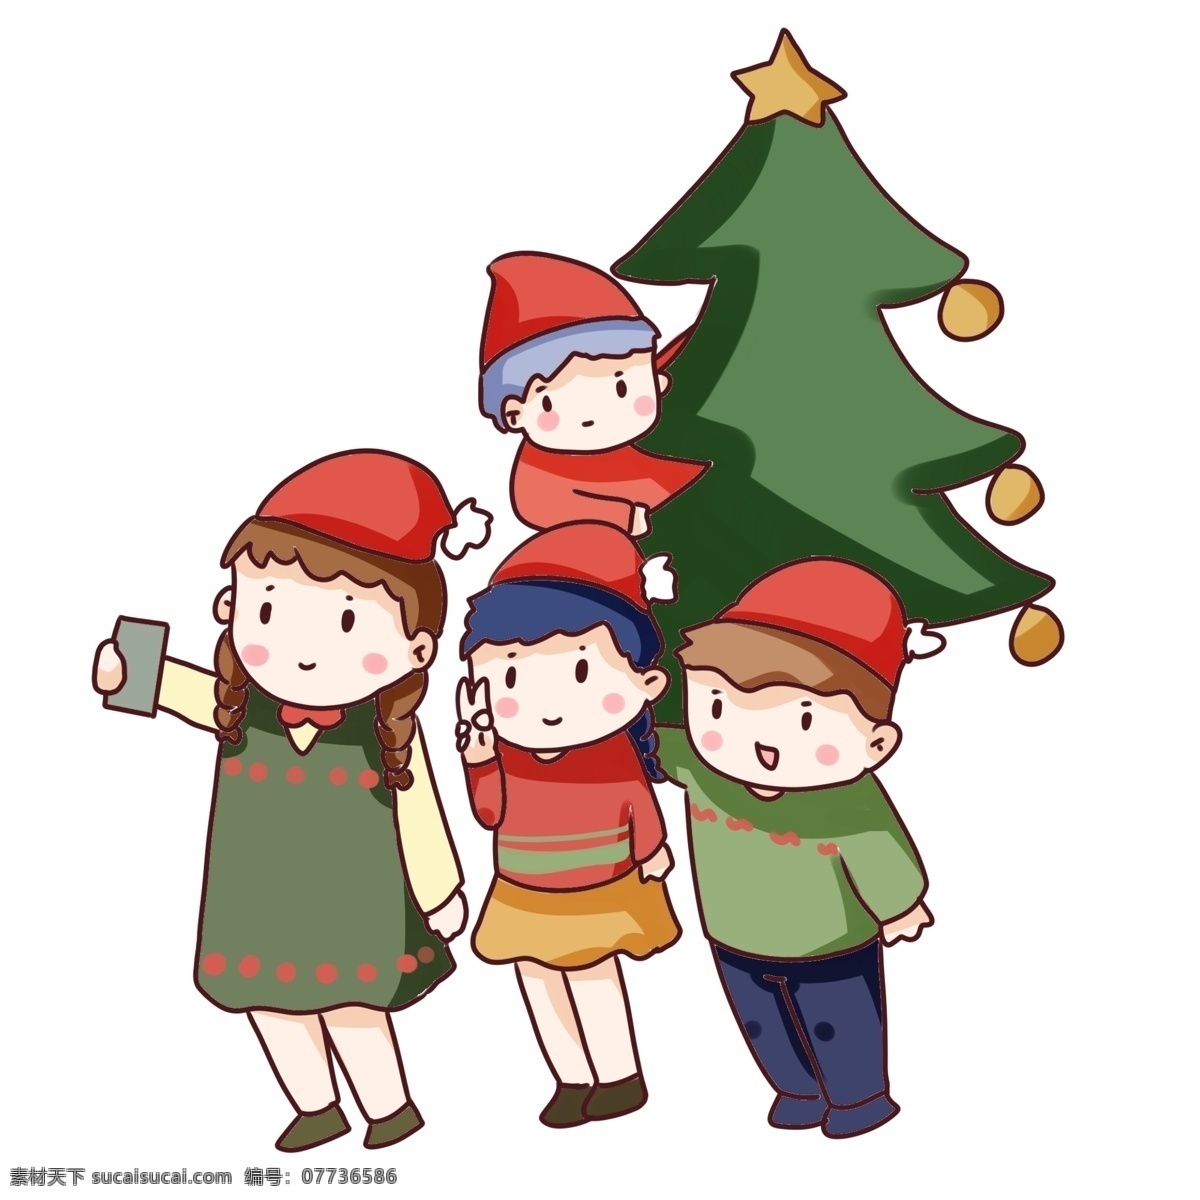 手绘 卡通 圣诞节 聚会 手绘卡通 圣诞节聚会 装饰图案 圣诞树 礼物 圣诞帽 自拍 朋友 小孩 过节 圣诞